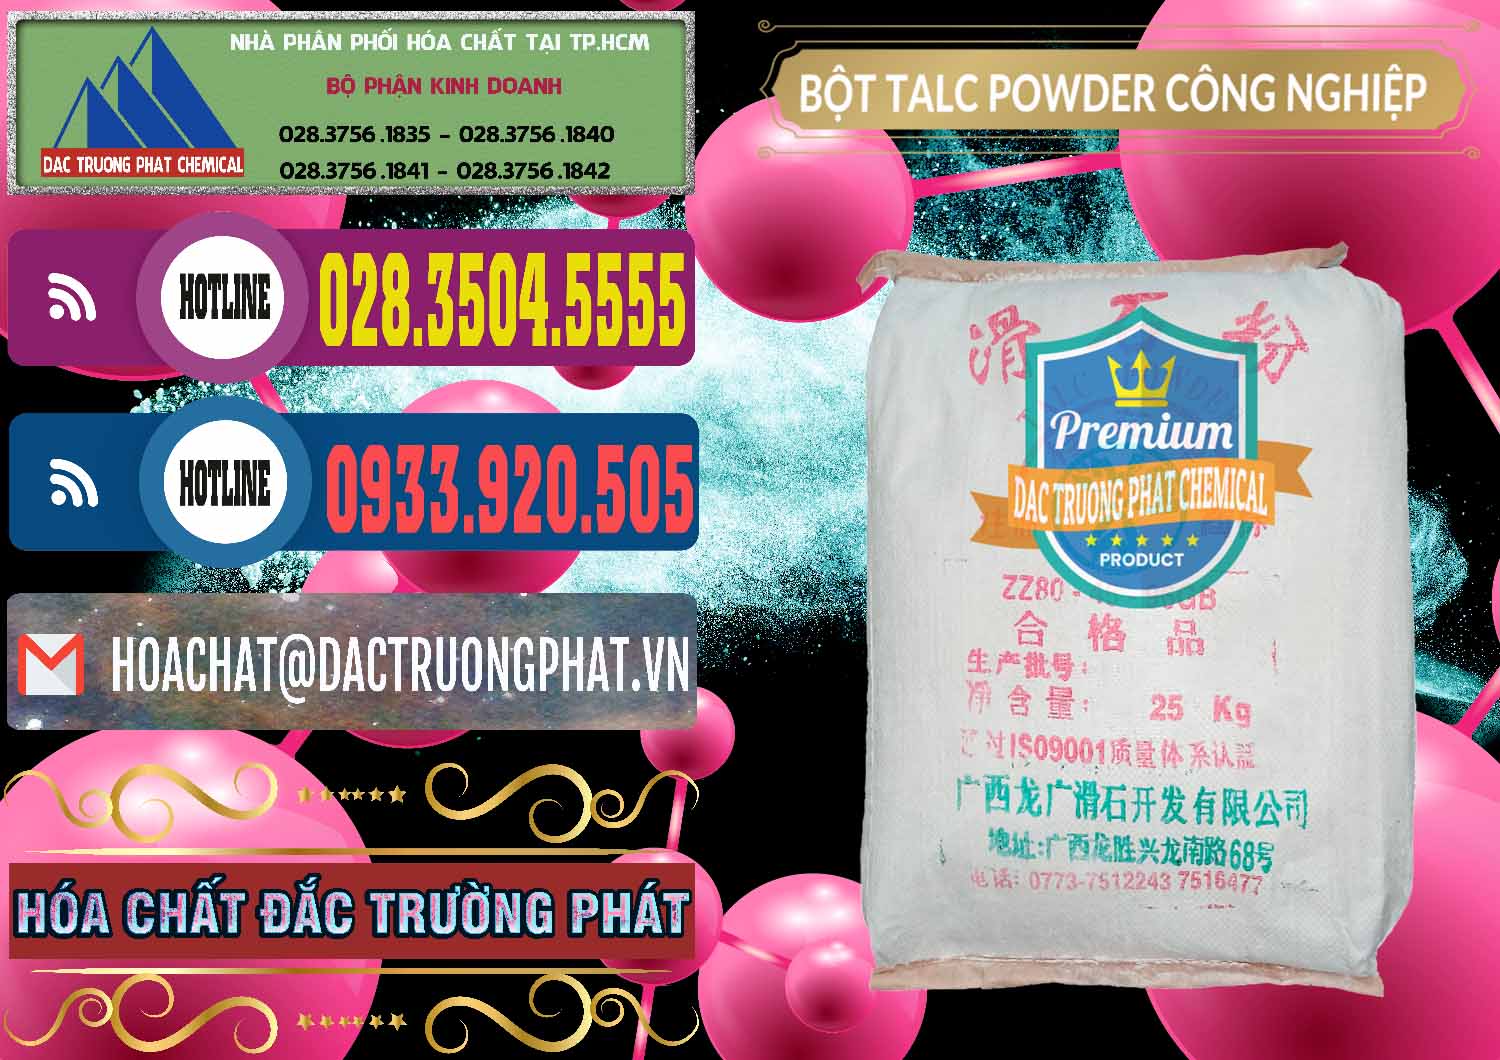 Công ty chuyên nhập khẩu _ bán Bột Talc Powder Công Nghiệp Trung Quốc China - 0037 - Nơi chuyên cung cấp và kinh doanh hóa chất tại TP.HCM - muabanhoachat.com.vn